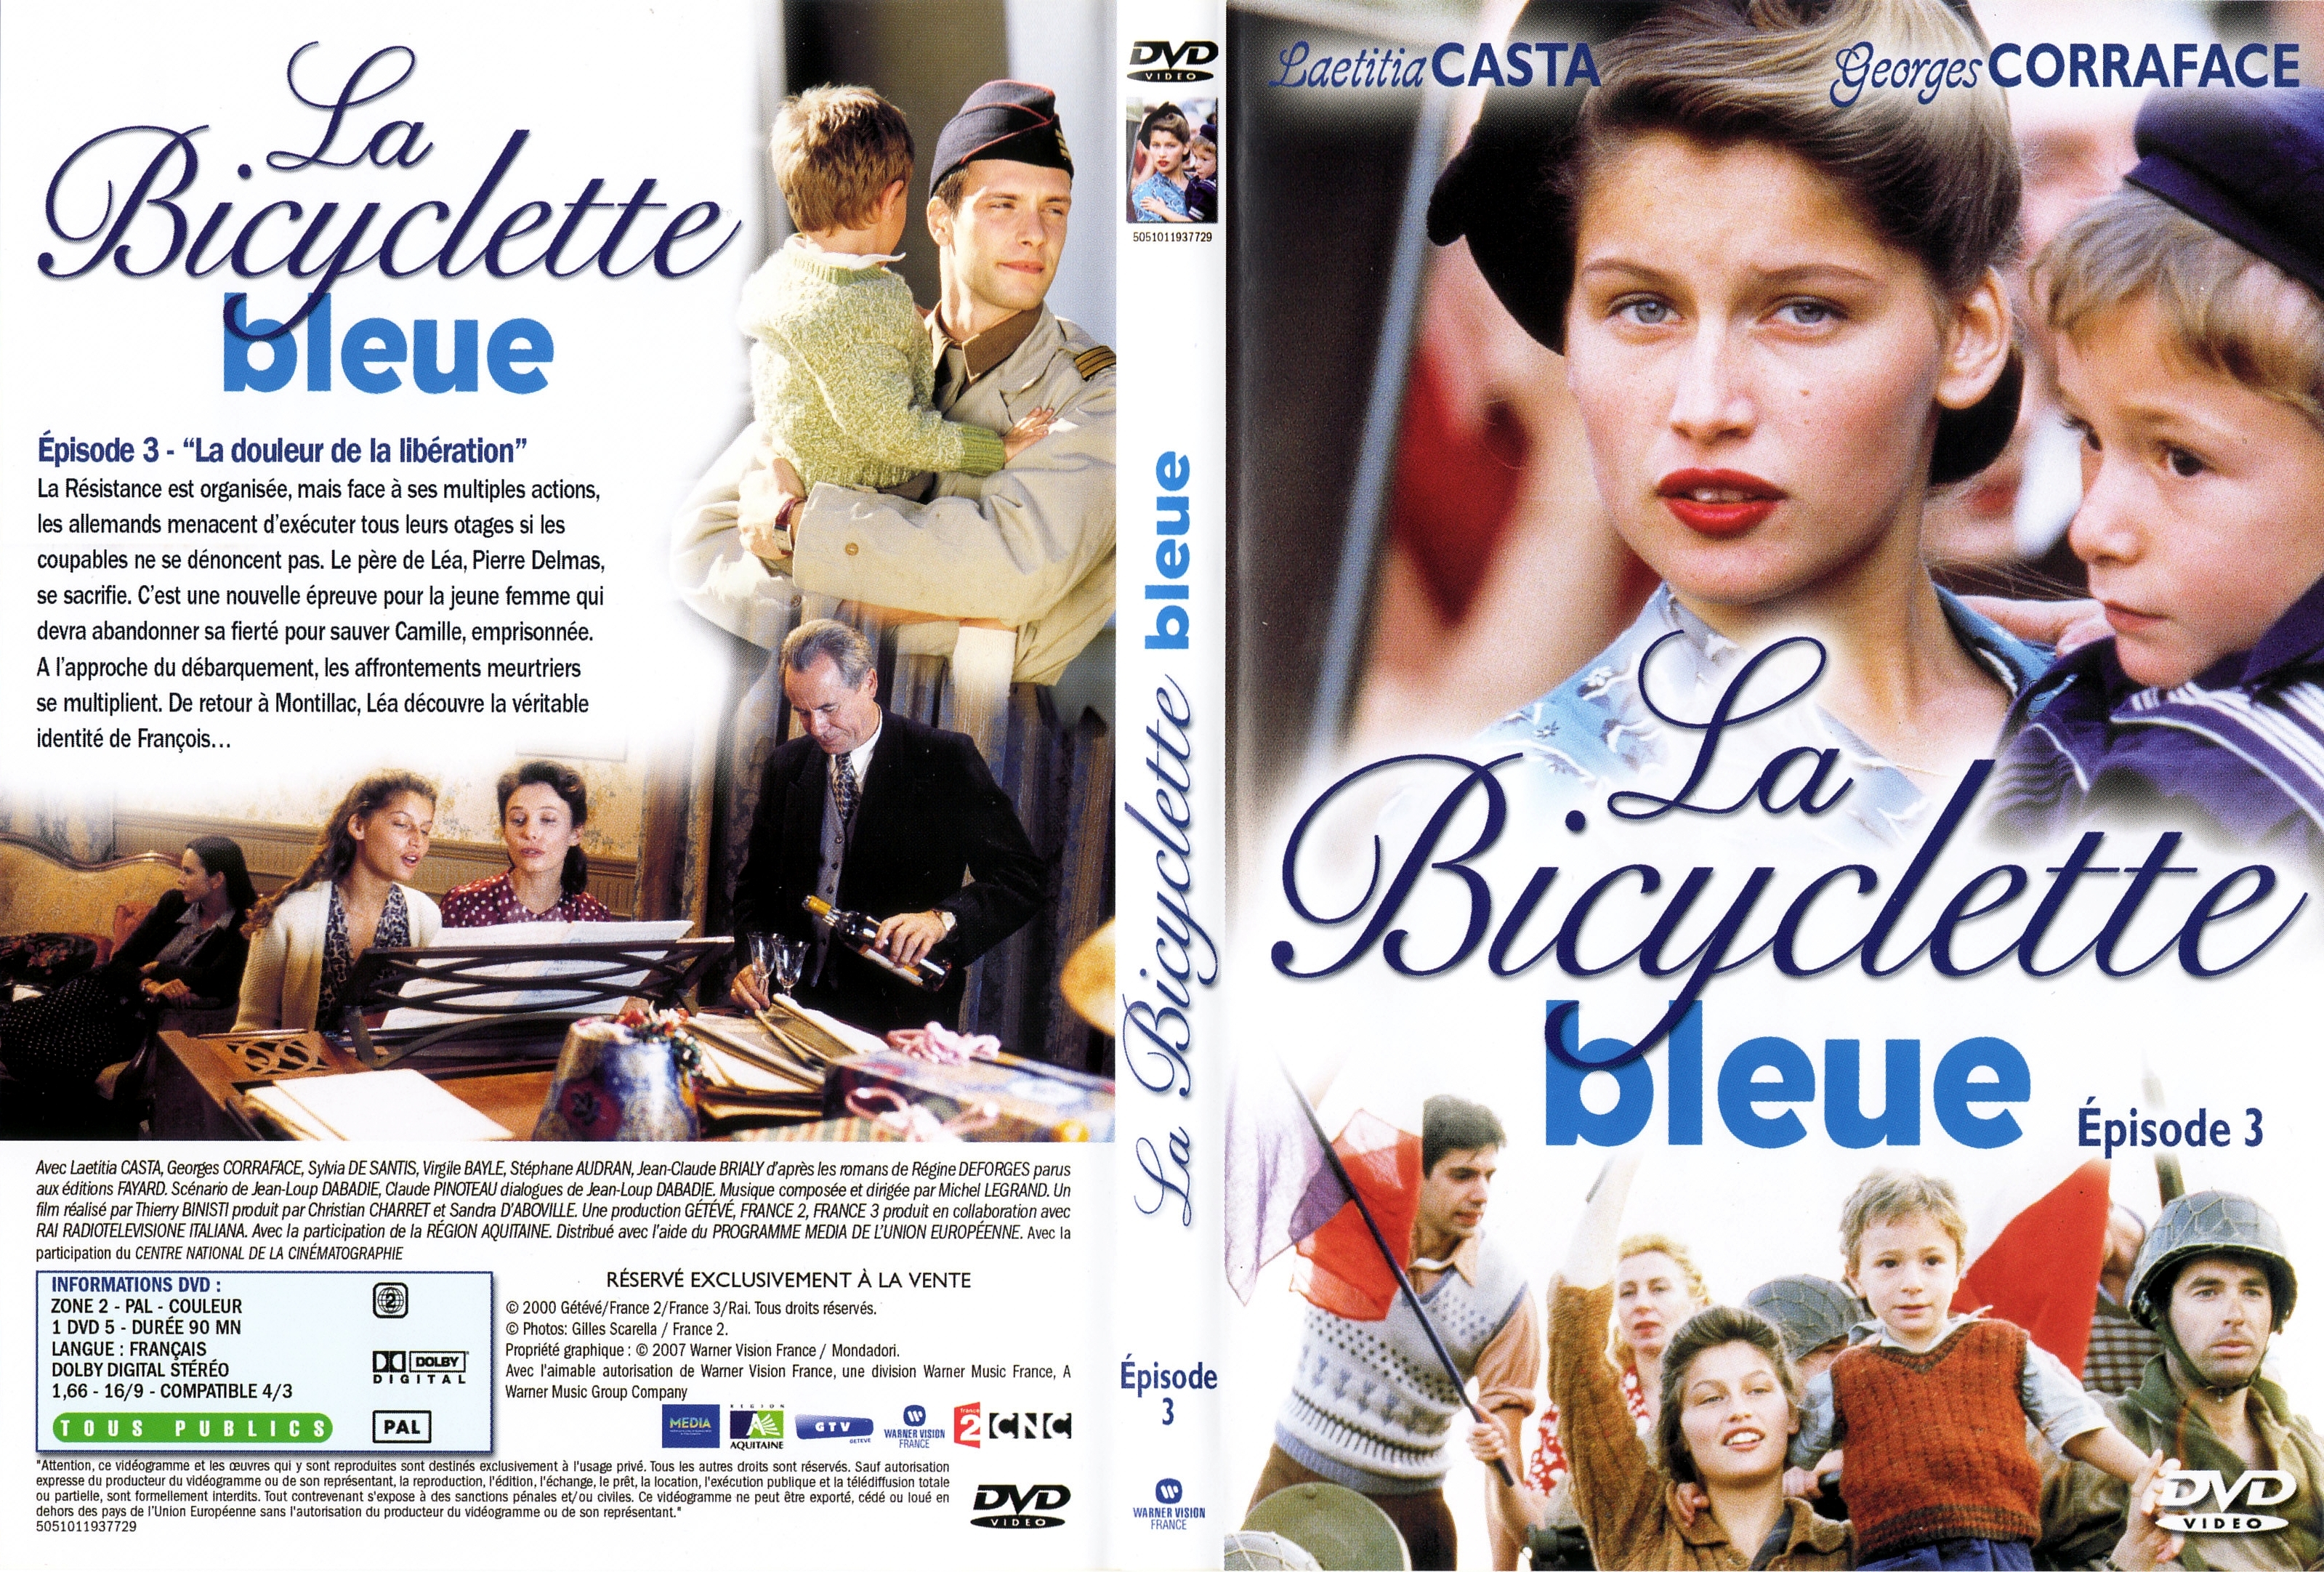 Jaquette DVD La bicyclette bleue Episode 3